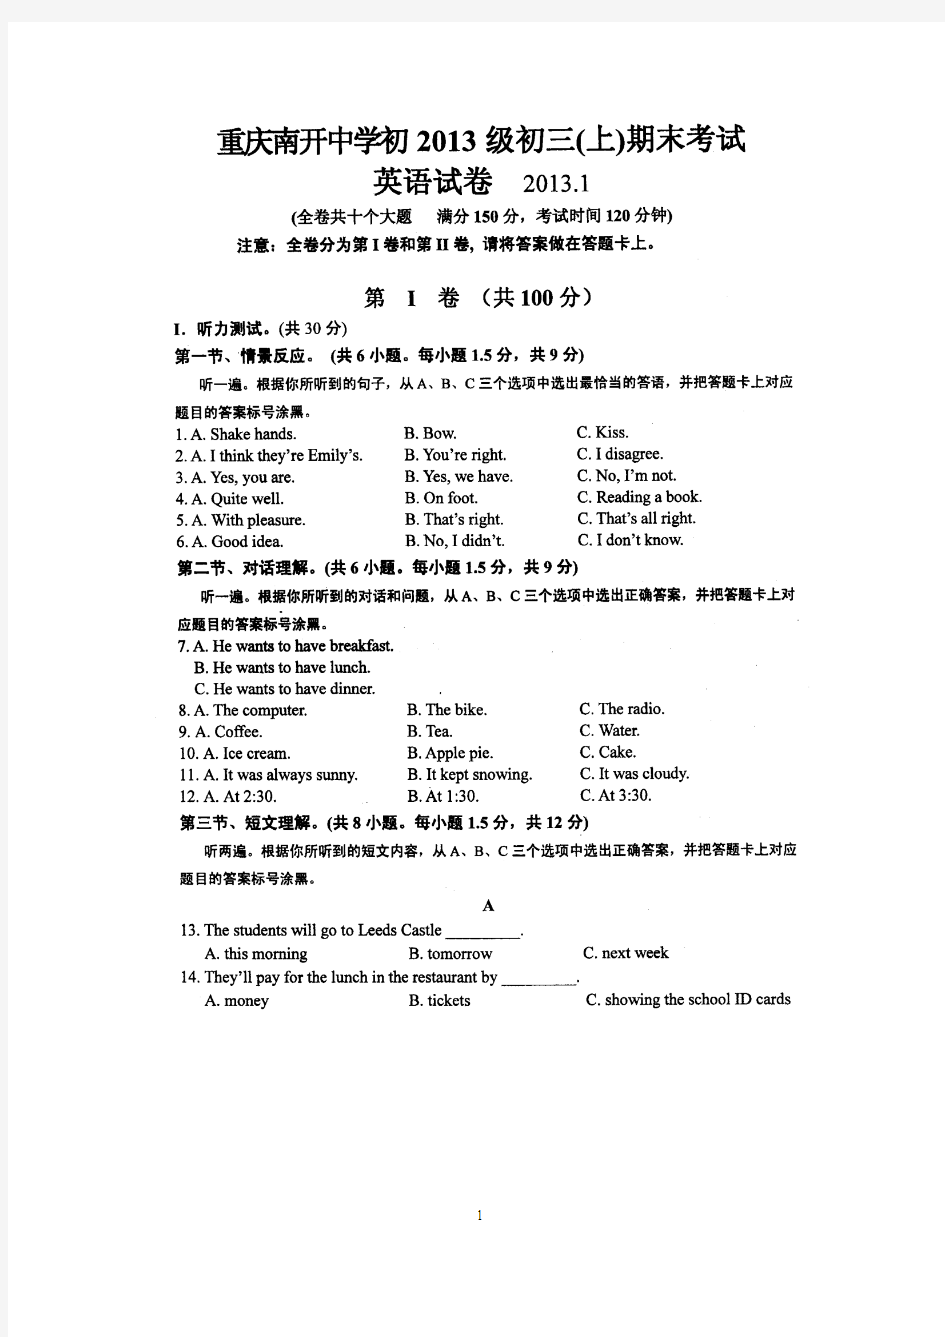 重庆南开中学初2013级九年级上期期末考试英语试题(扫描版无答案)